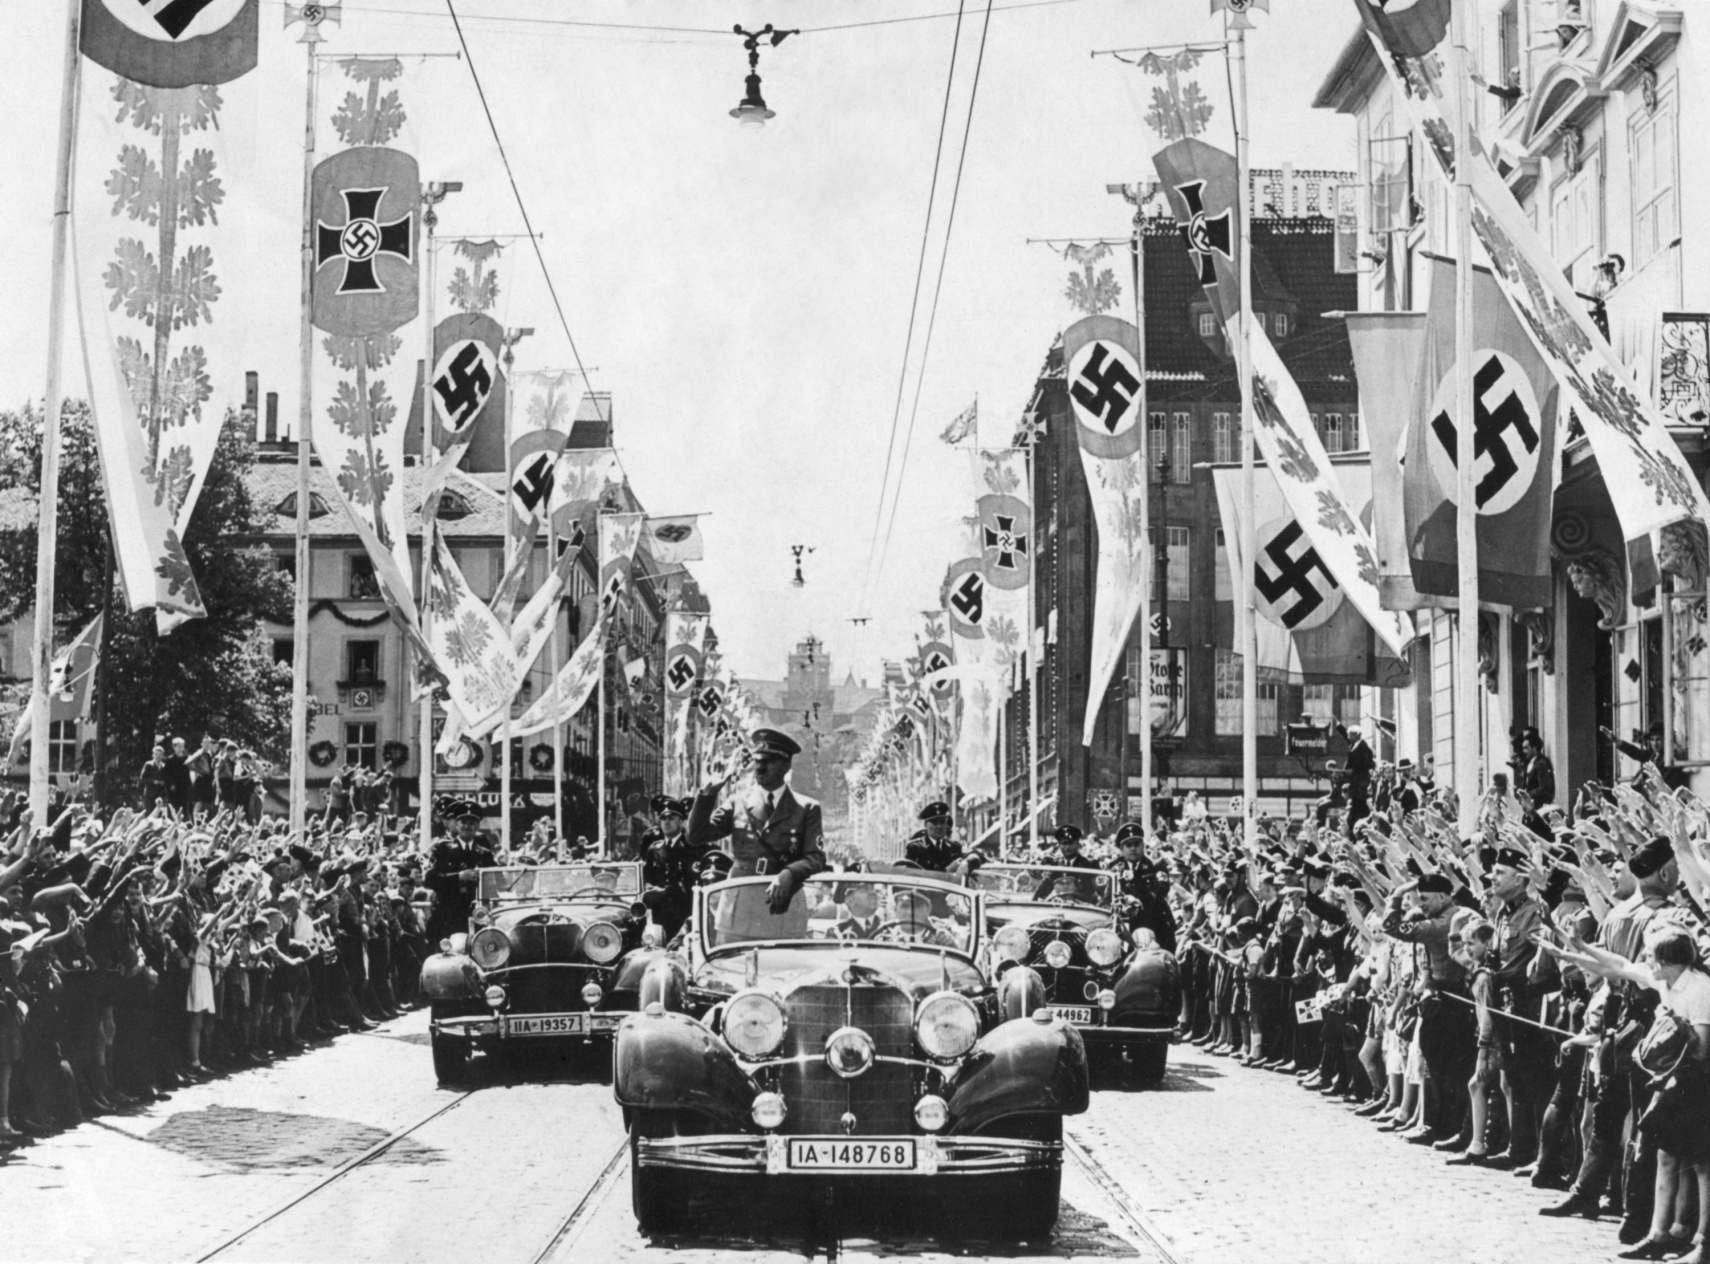 Adolf Hitler vinker til folkemængderne fra sin bil i spidsen for en parade. Gaderne er dekoreret med forskellige hagekors-bannere. Ca. 1934-38. Hitler havde en bekvem, men falsk grund til at vælge hagekorssymbolet som deres insignier. Det var blevet brugt af de ariske nomader i Indien i det andet årtusinde. I nazistisk teori var arierne af tysk aner, og Hitler konkluderede, at hagekorset havde været evigt antisemitisk.